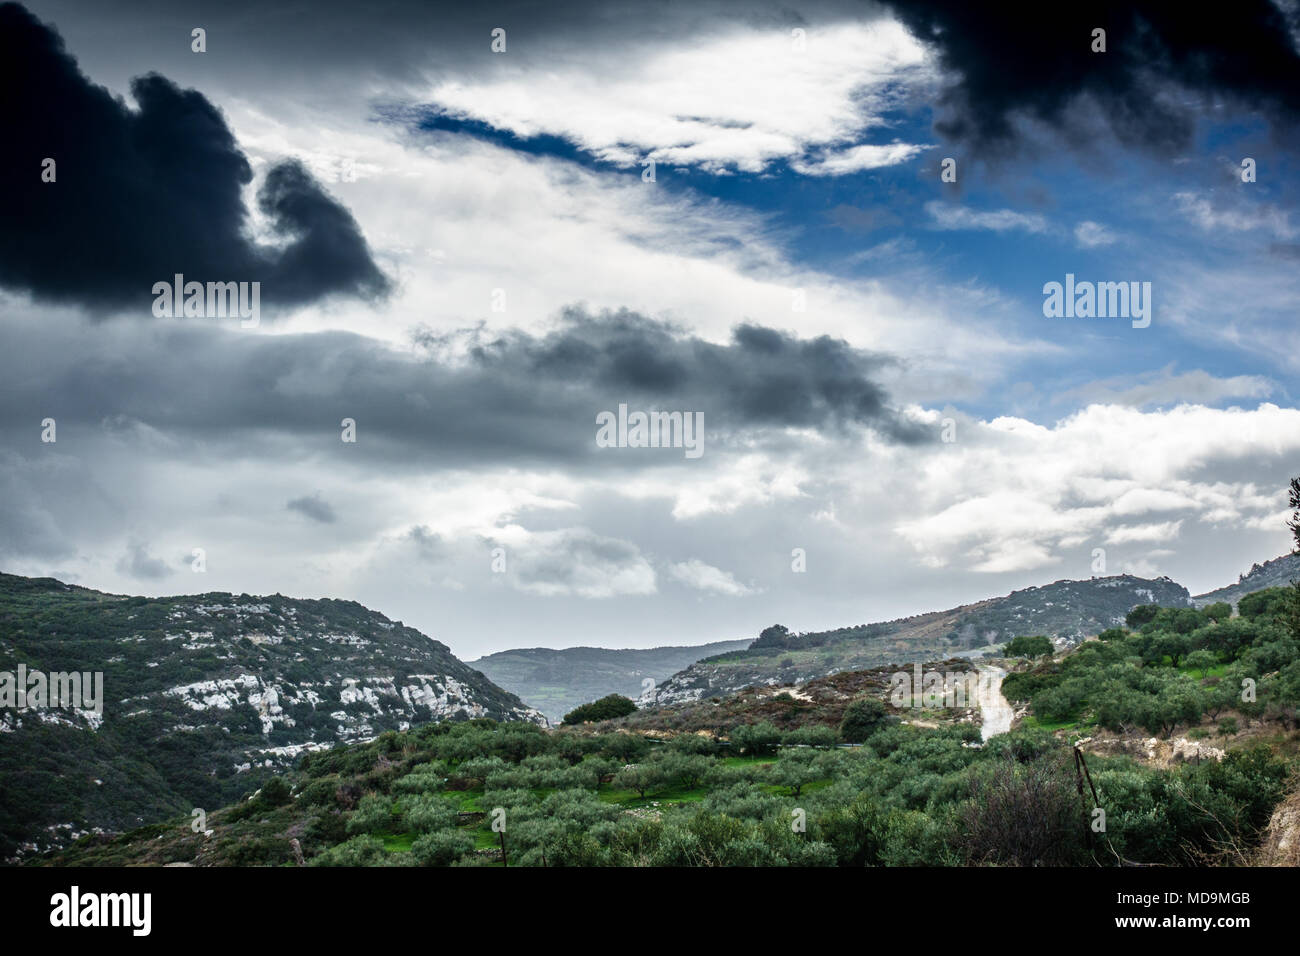 Scenic landscape and cloudscape, Greece Stock Photo